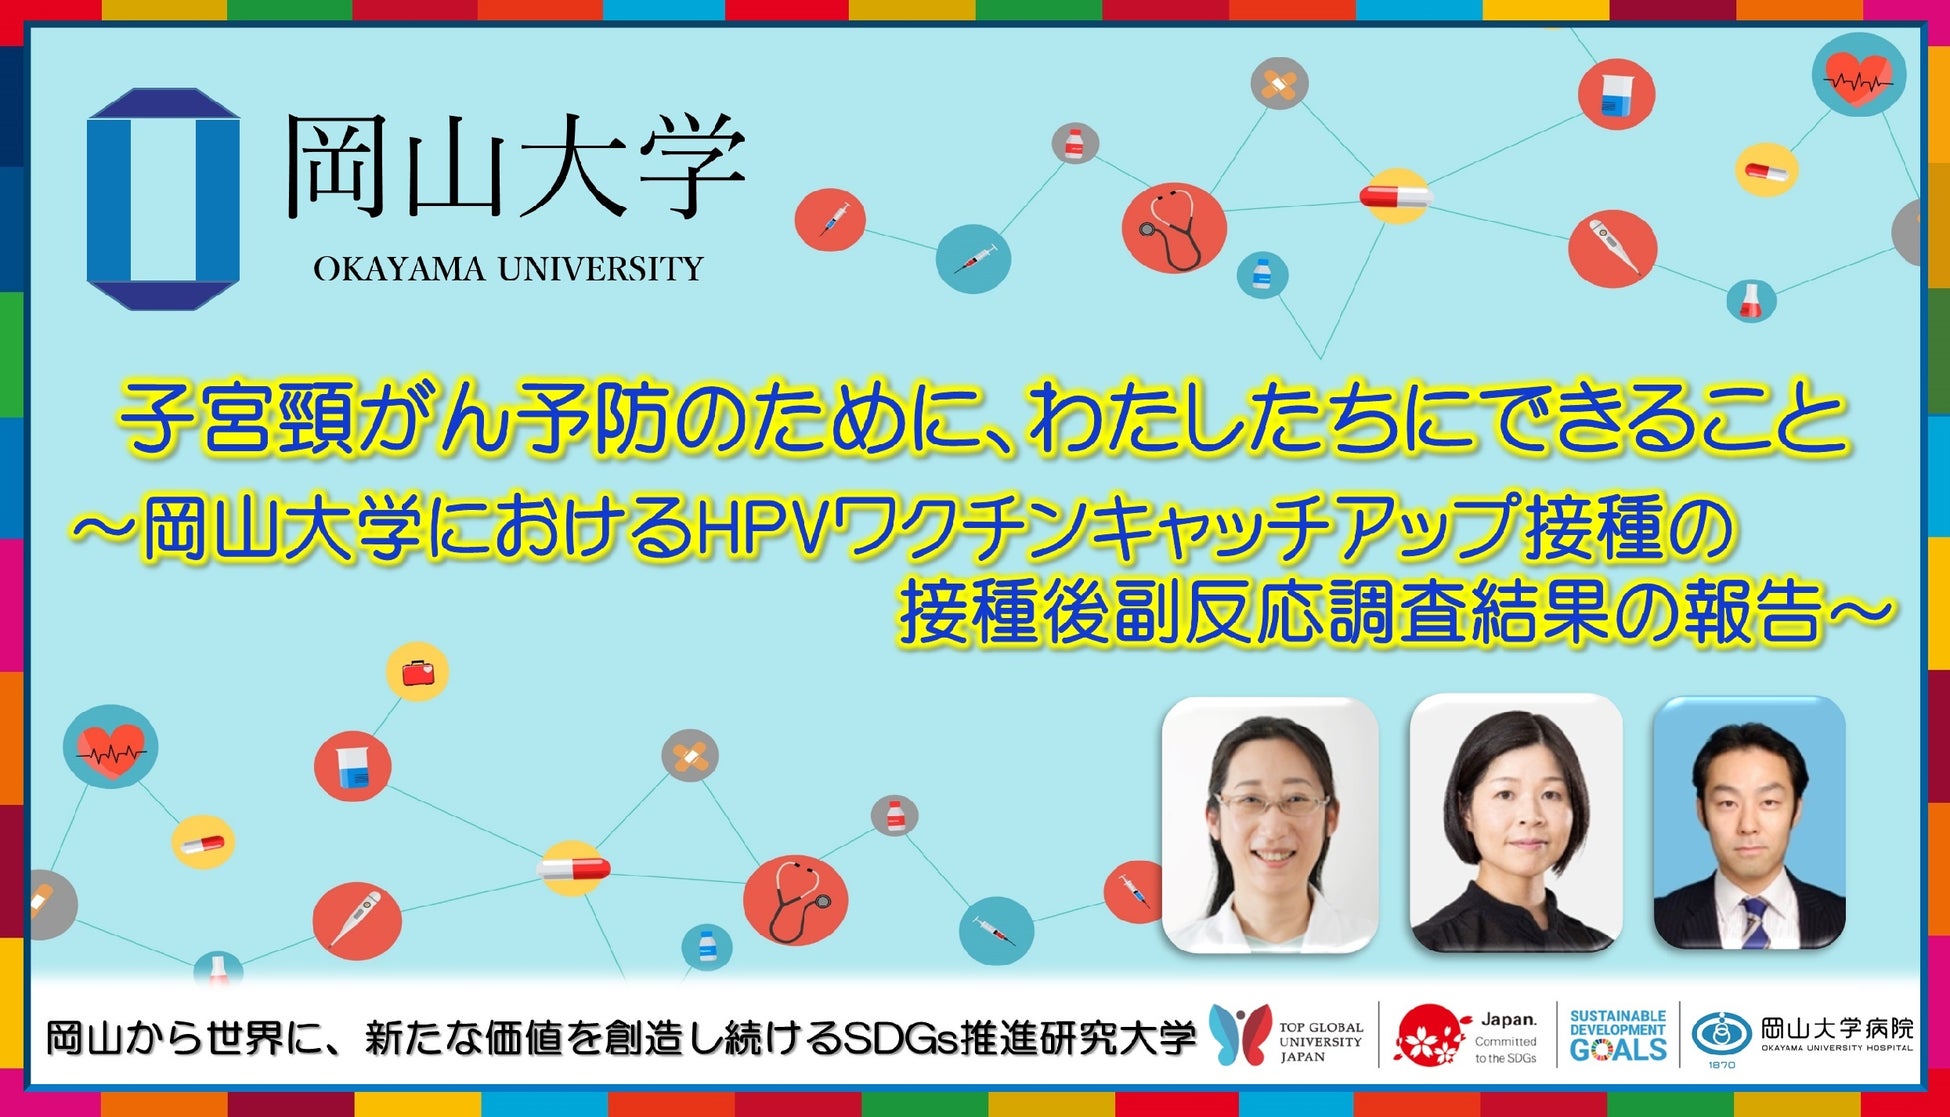 【岡山大学】子宮頸がん予防のために、わたしたちにできること ～岡山大学におけるHPVワクチンキャッチアップ...